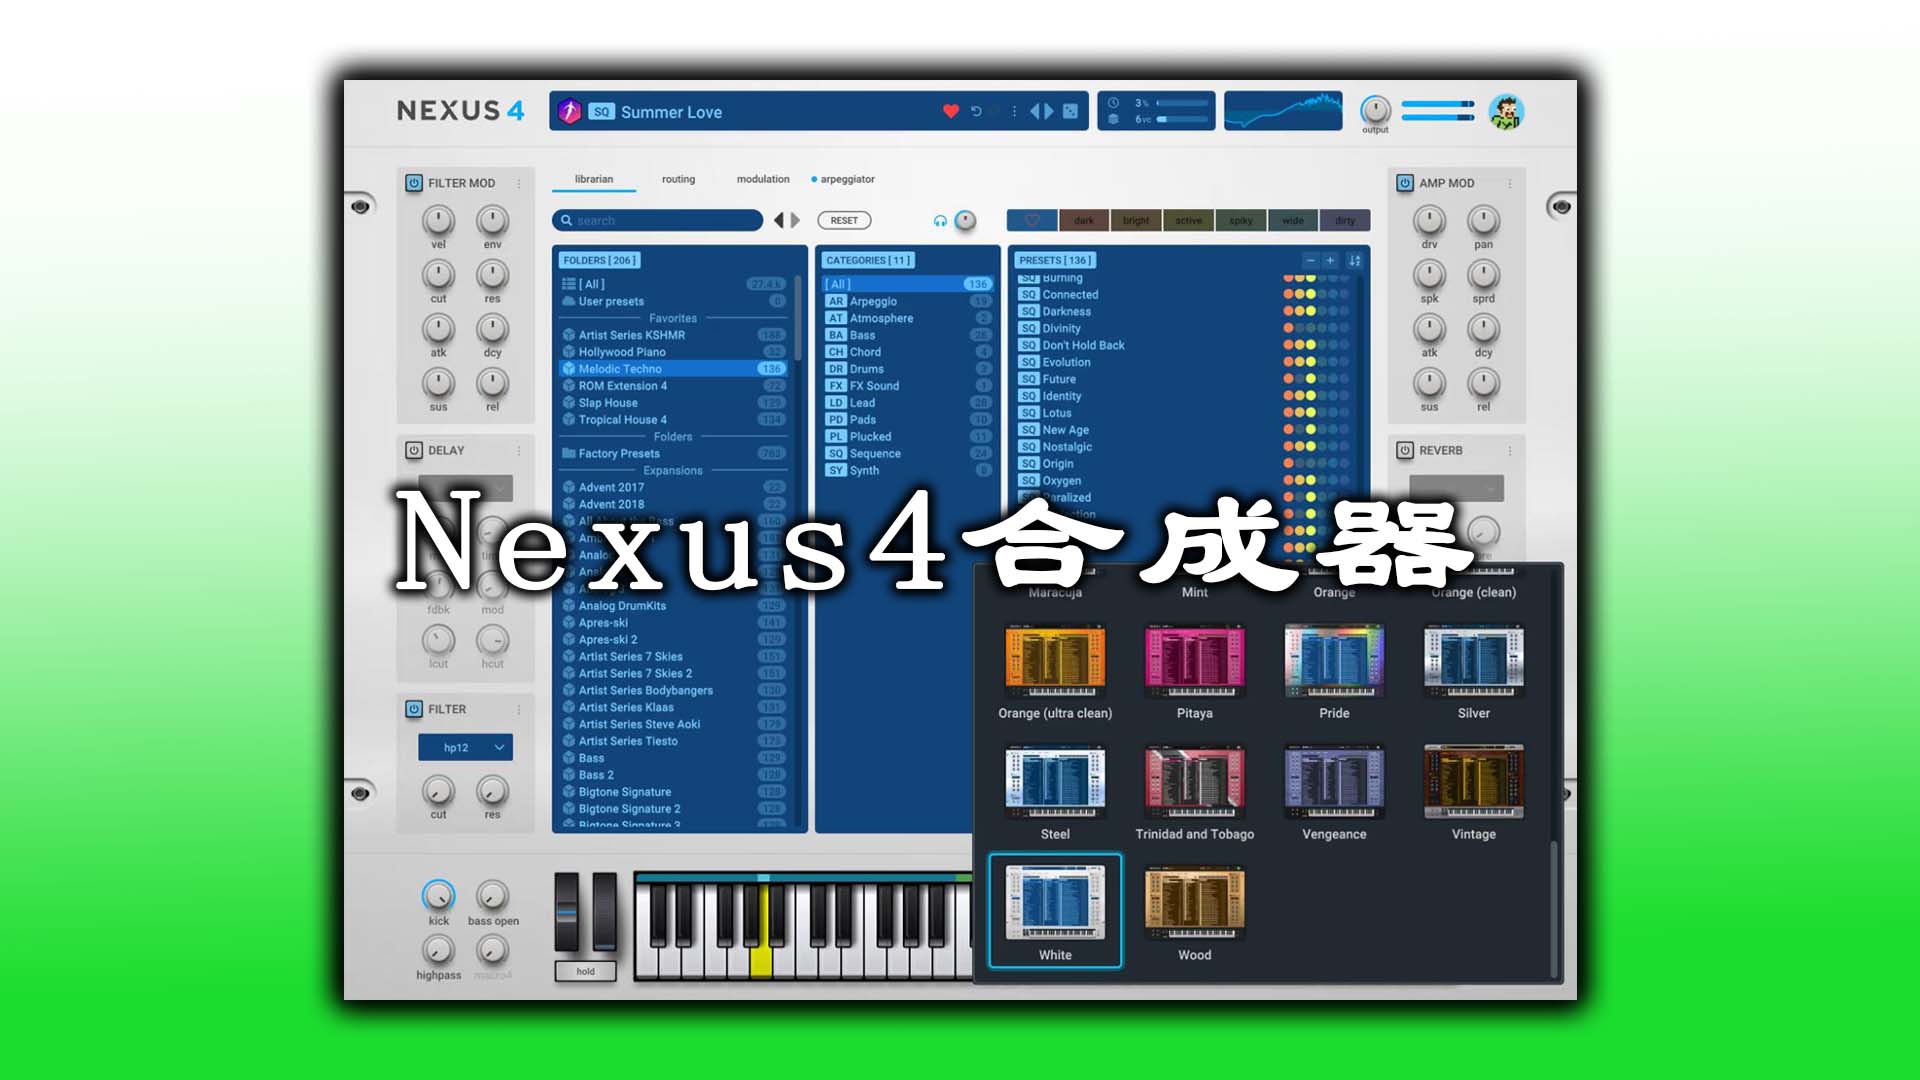 Nexus4 合成器最新完整音色库版 (音乐制作人必备合成器) 音色超多! reFx Nexus4插件+完整音色库版 [Windows完整音色库版]